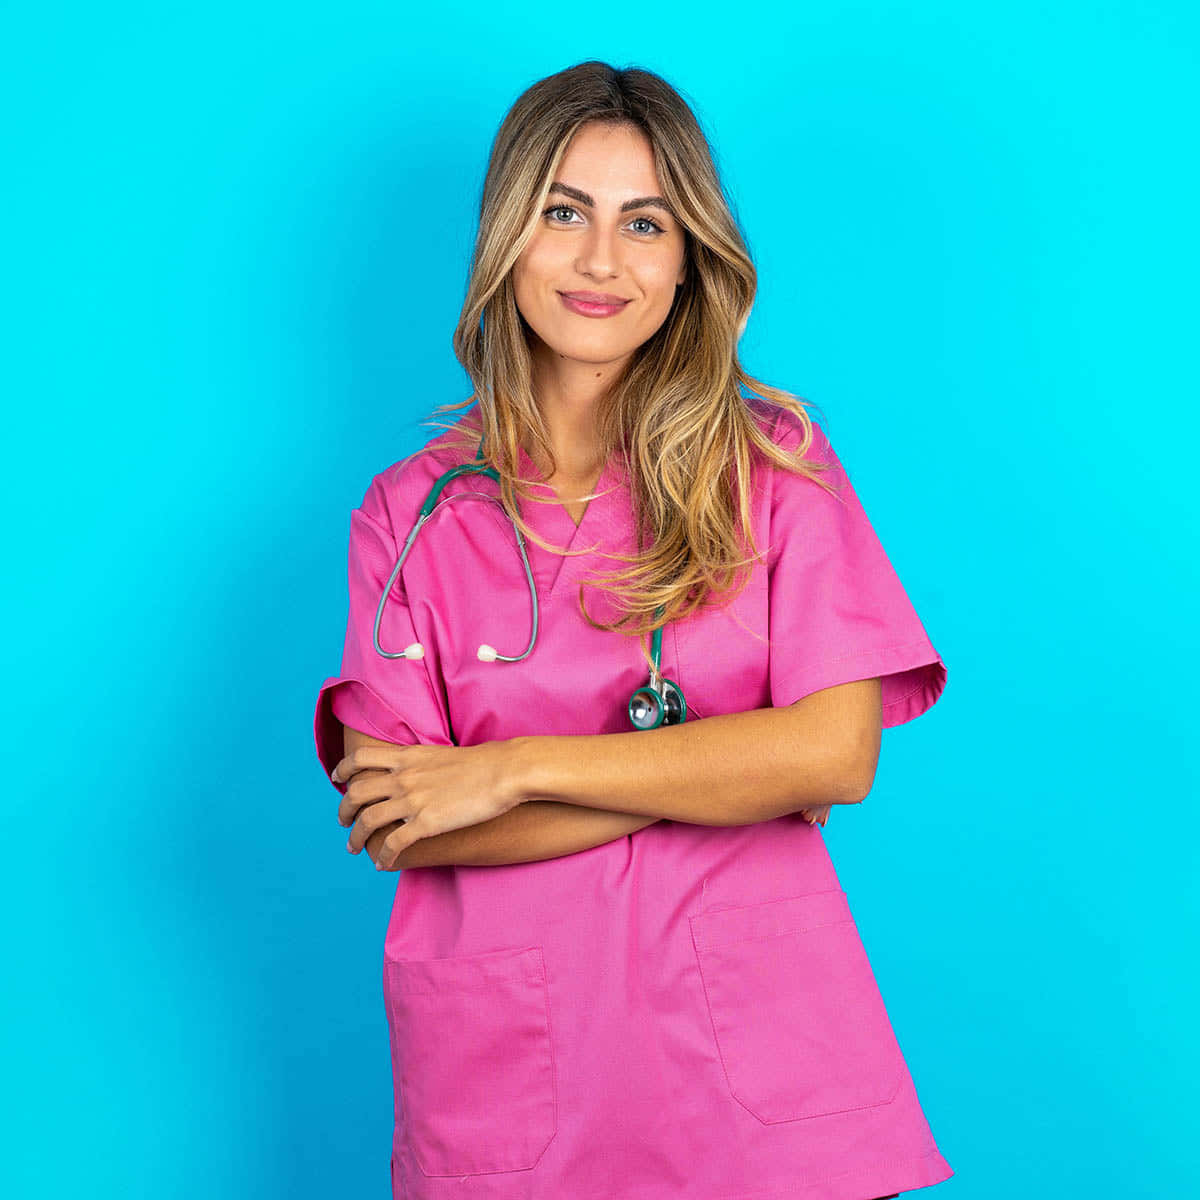 Pink Nurse Portrait Against Blue Background Wallpaper